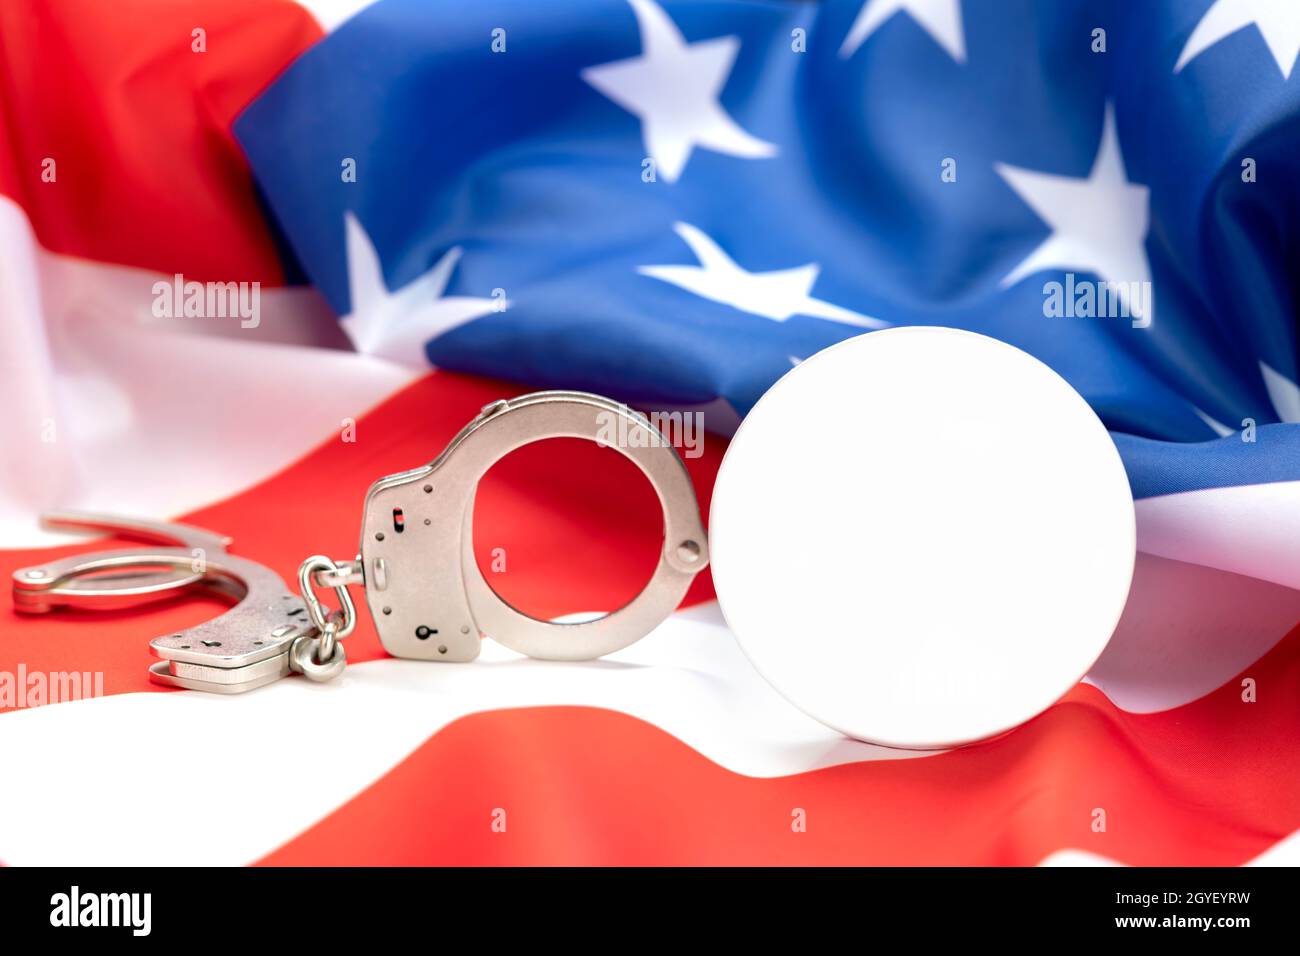 Les images représentent un bouton vide pour le placement de toute copie qui indique le lien entre la loi, l'ordre et le crime en Amérique. Banque D'Images